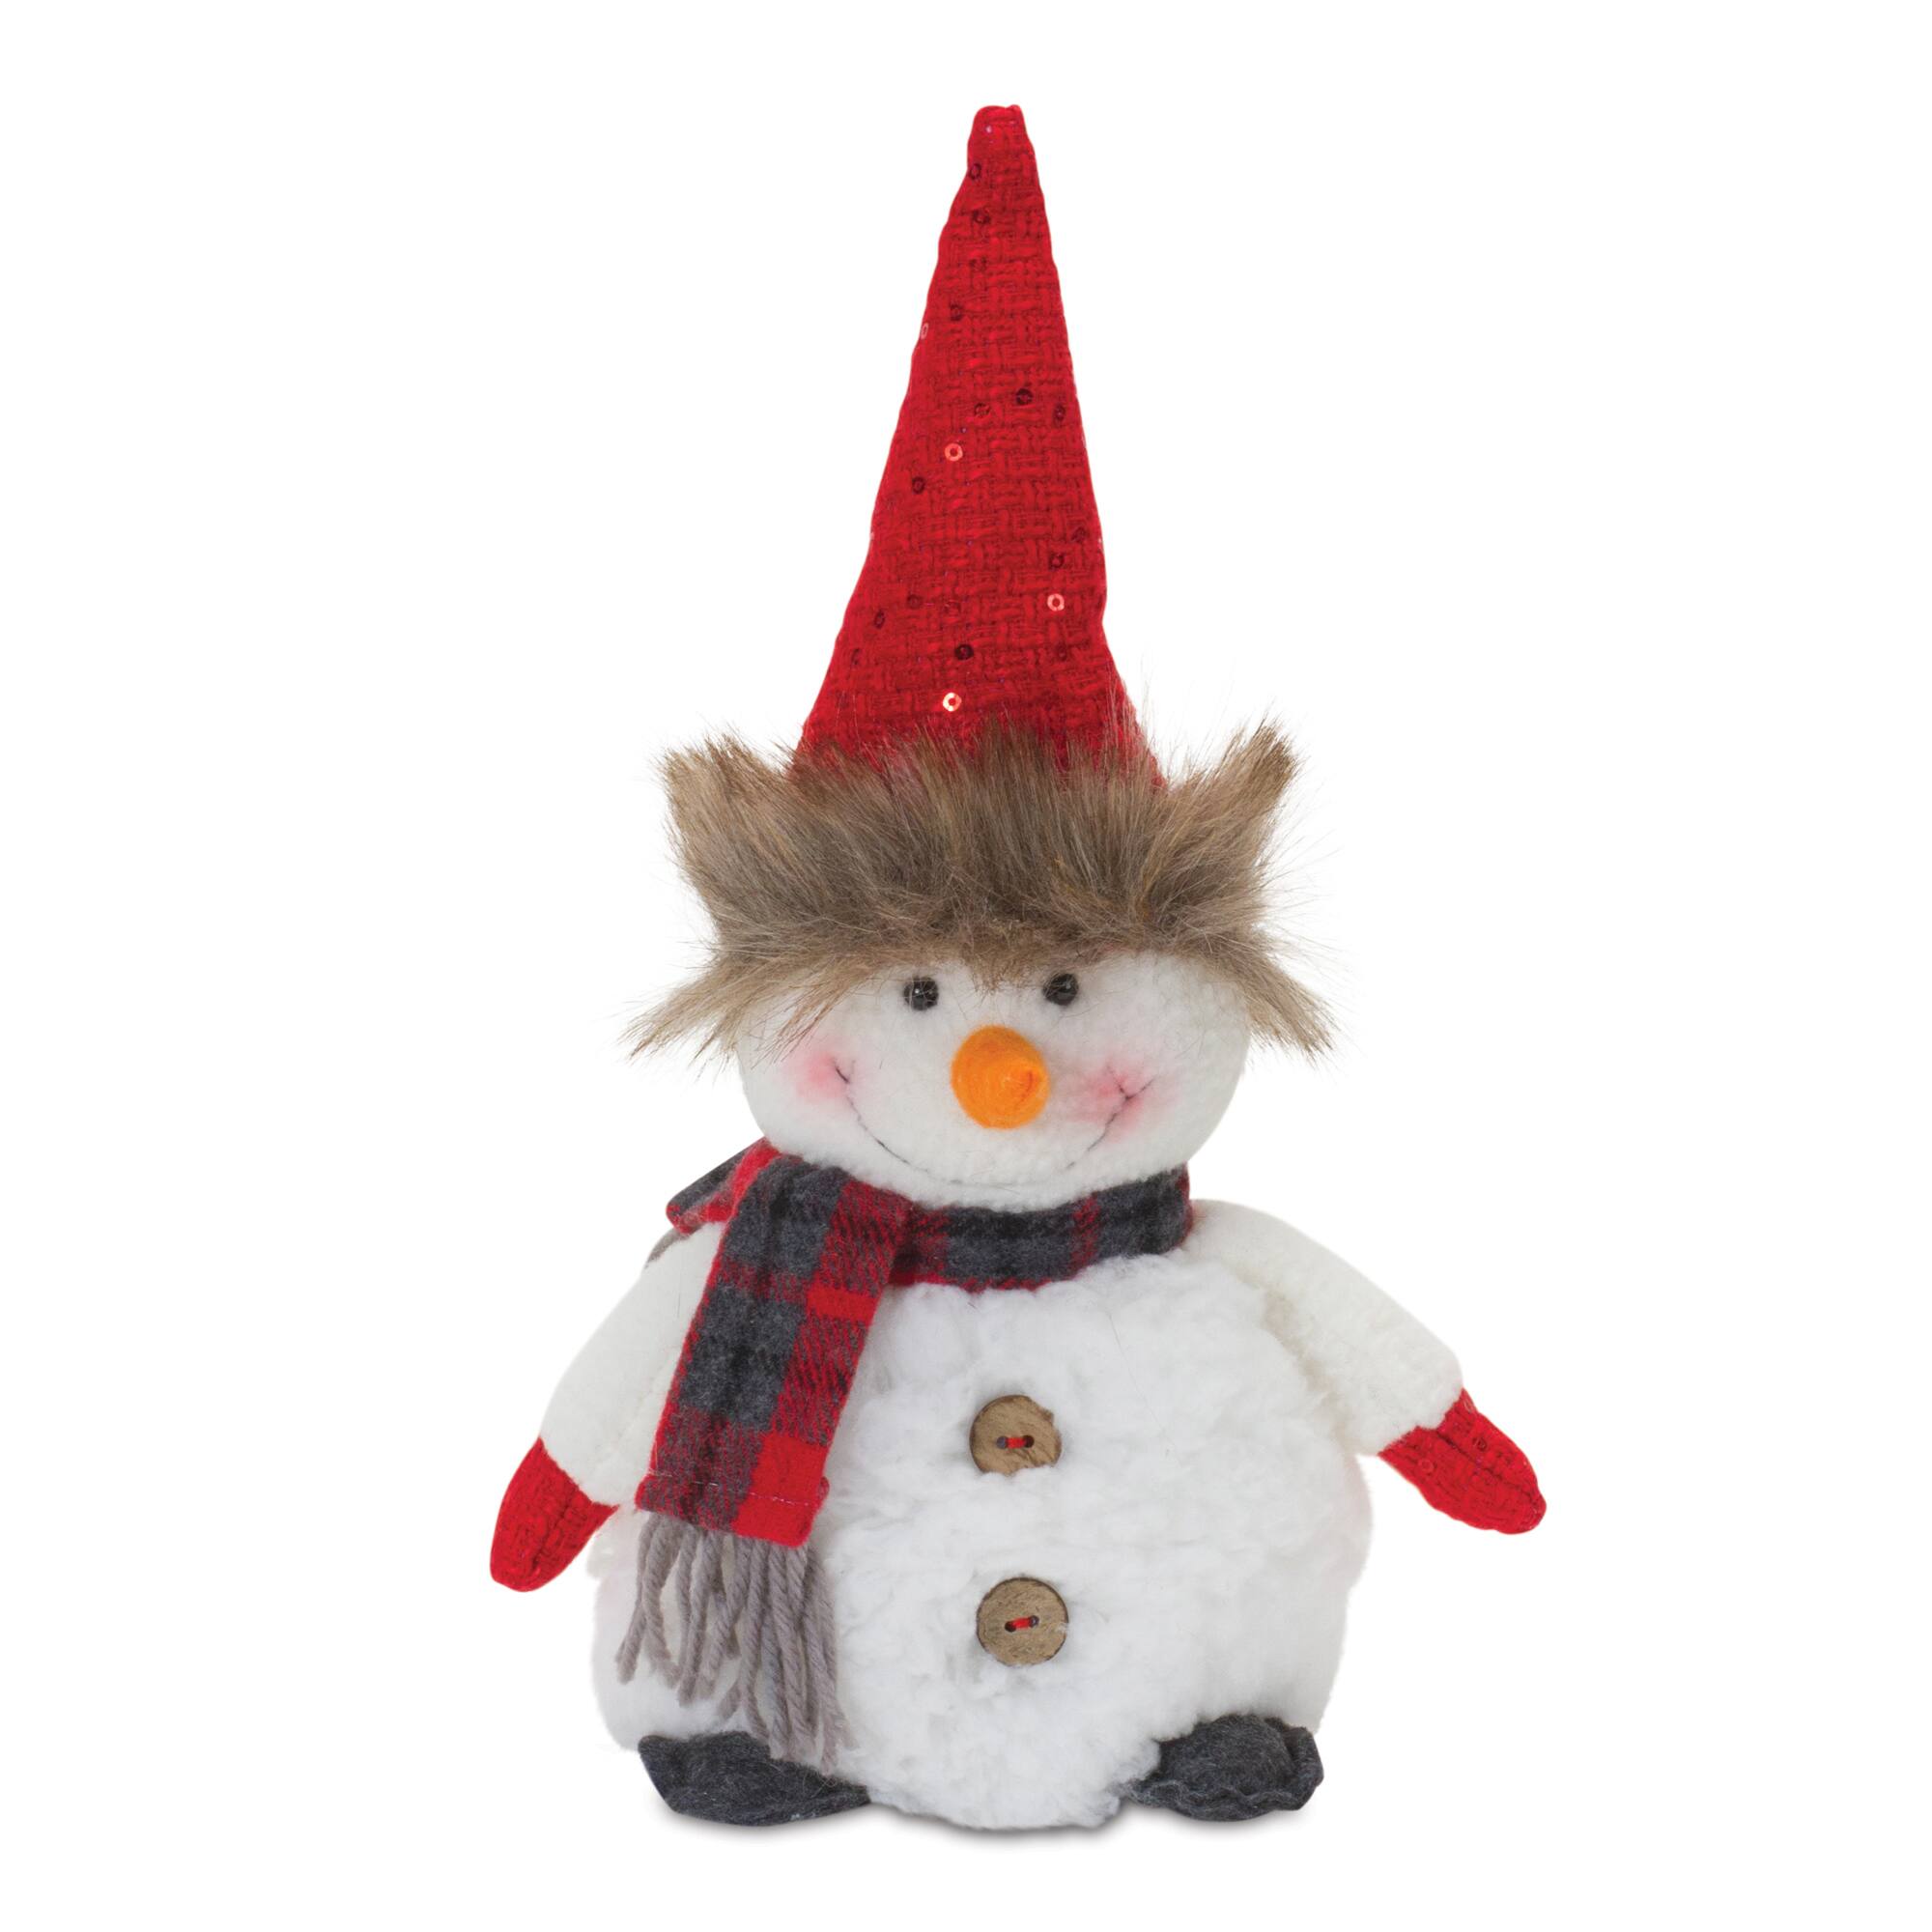 Plush Snowman with Hat &#x26; Scarf Set, 10.5&#x22; &#x26; 8&#x22;